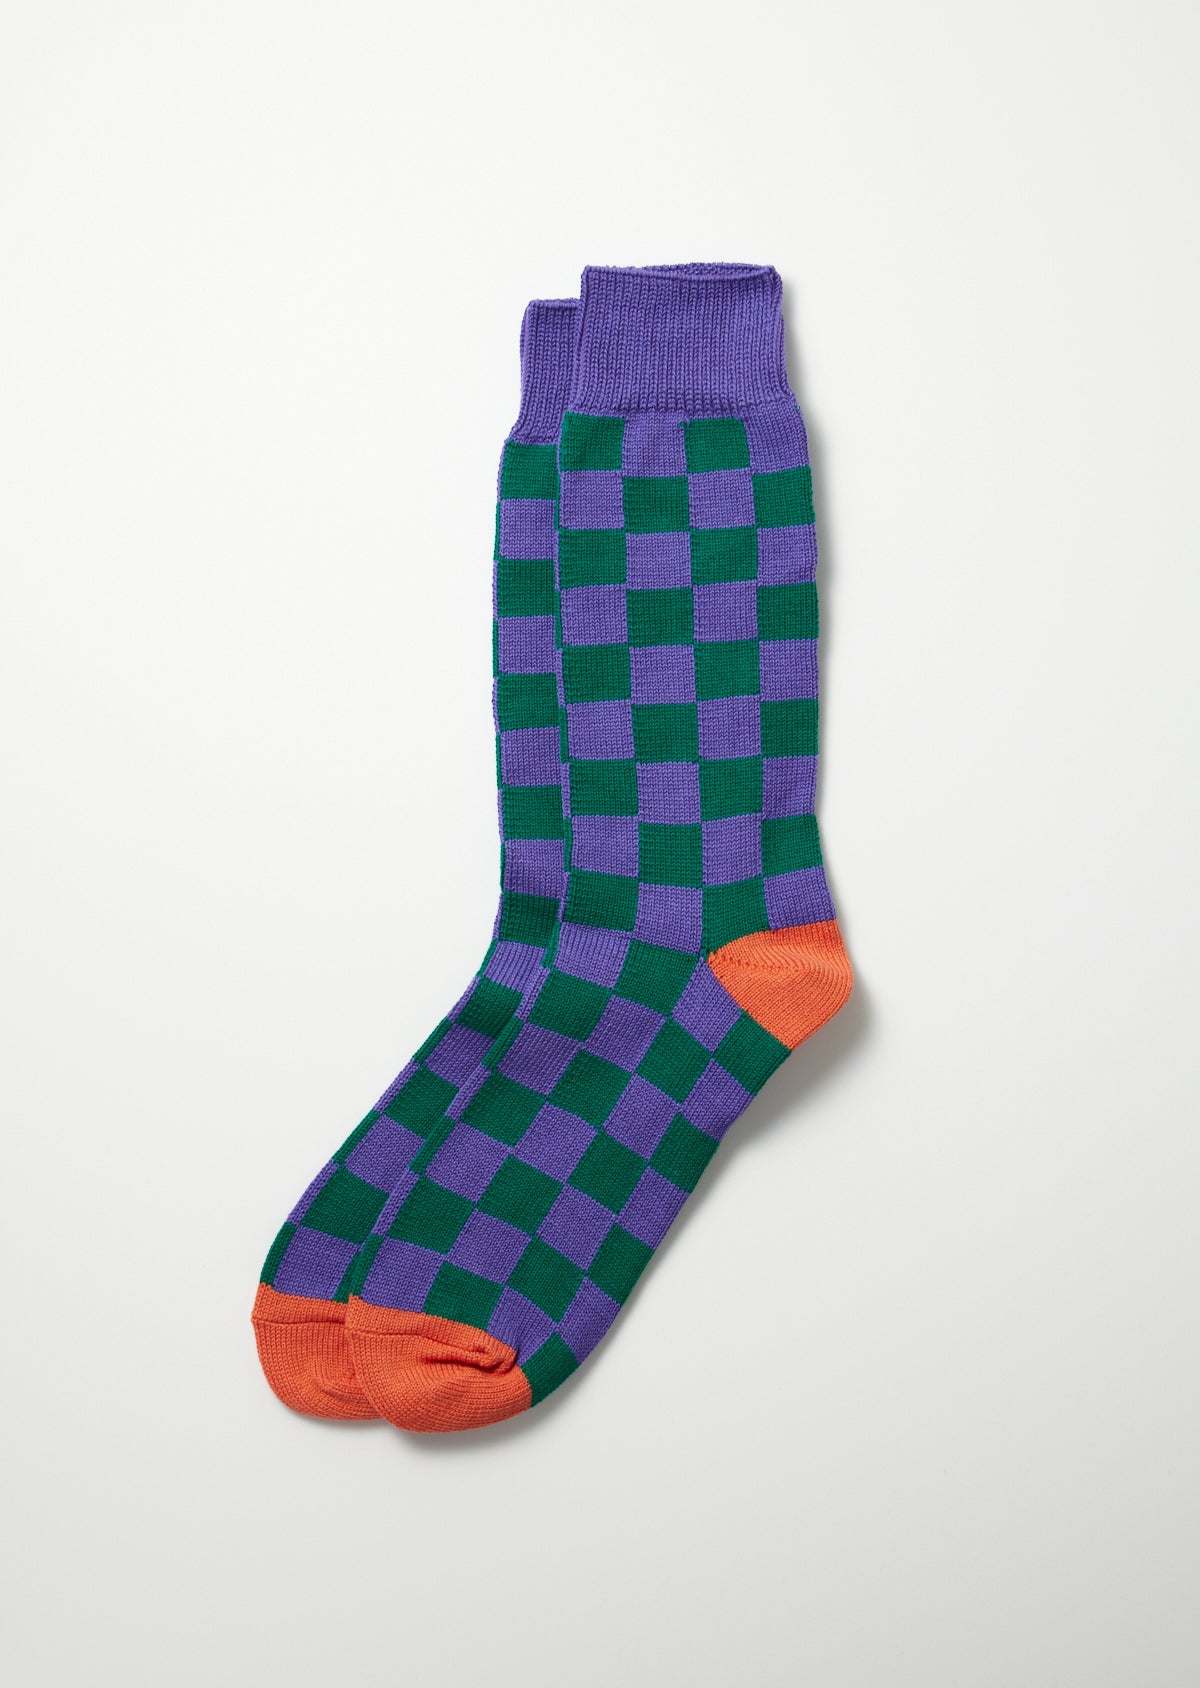 Schachbrett Socken - violett/grün